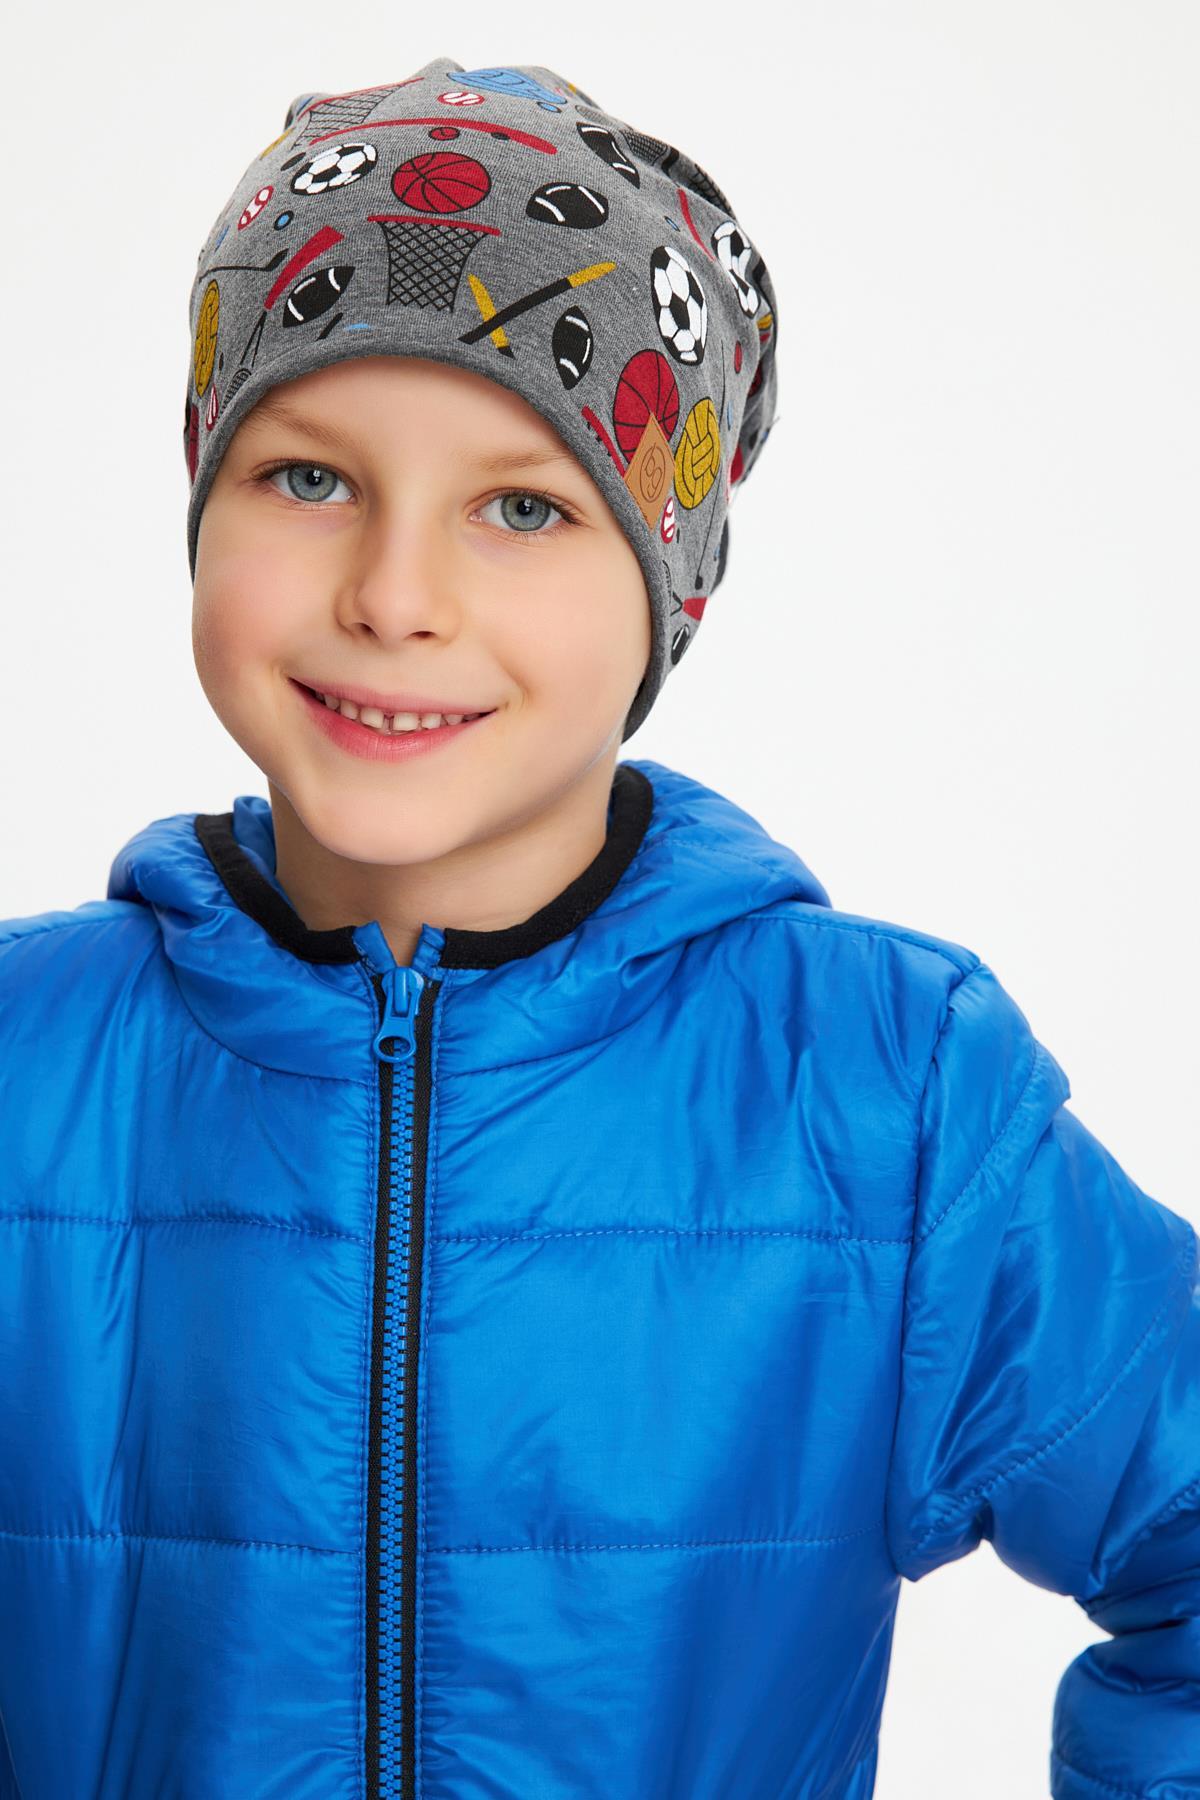 Füme Erkek Çocuk Renkli Figürlü Şapka Bere yumuşak çift katlı %100 doğal  pamuklu penye